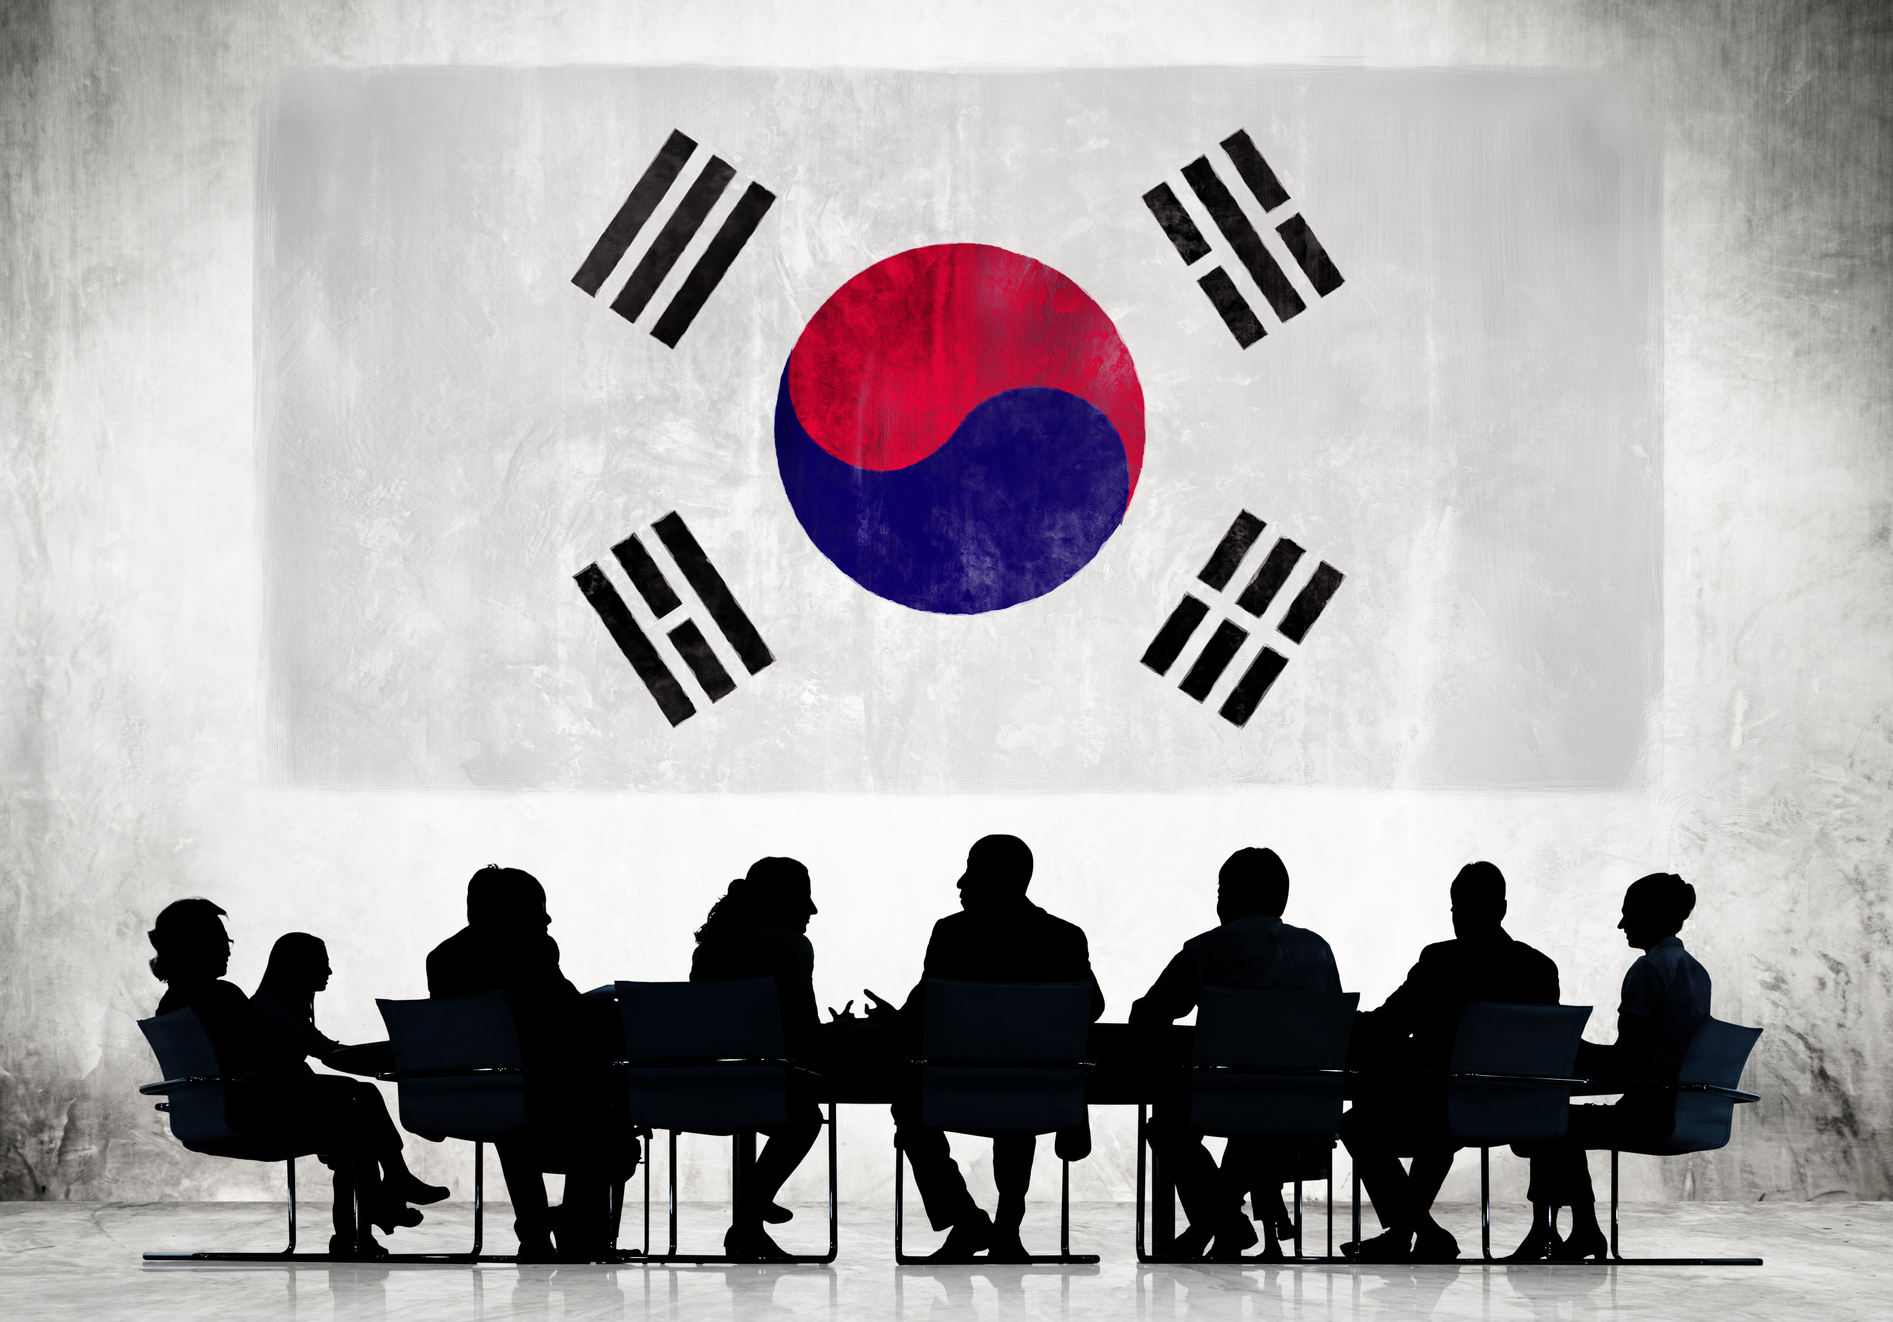 Thủ tục xin visa công tác Hàn Quốc 2019 chi tiết nhất